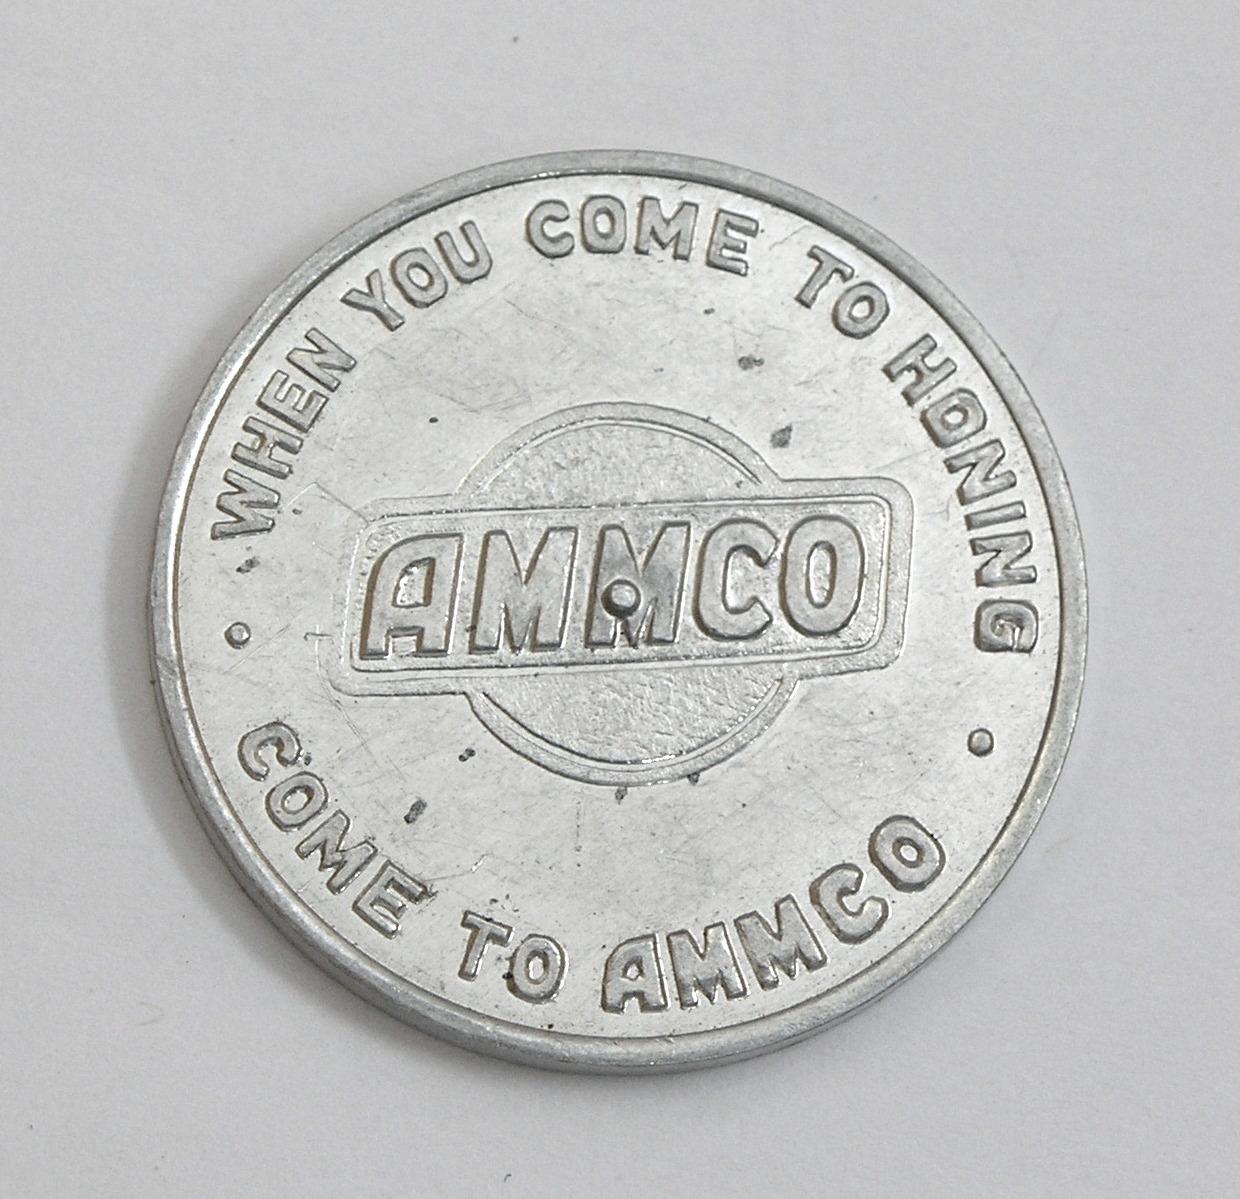 Vintage Ammco Brake Service Aluminum Spinner Coin/Token. "When You Come Hon